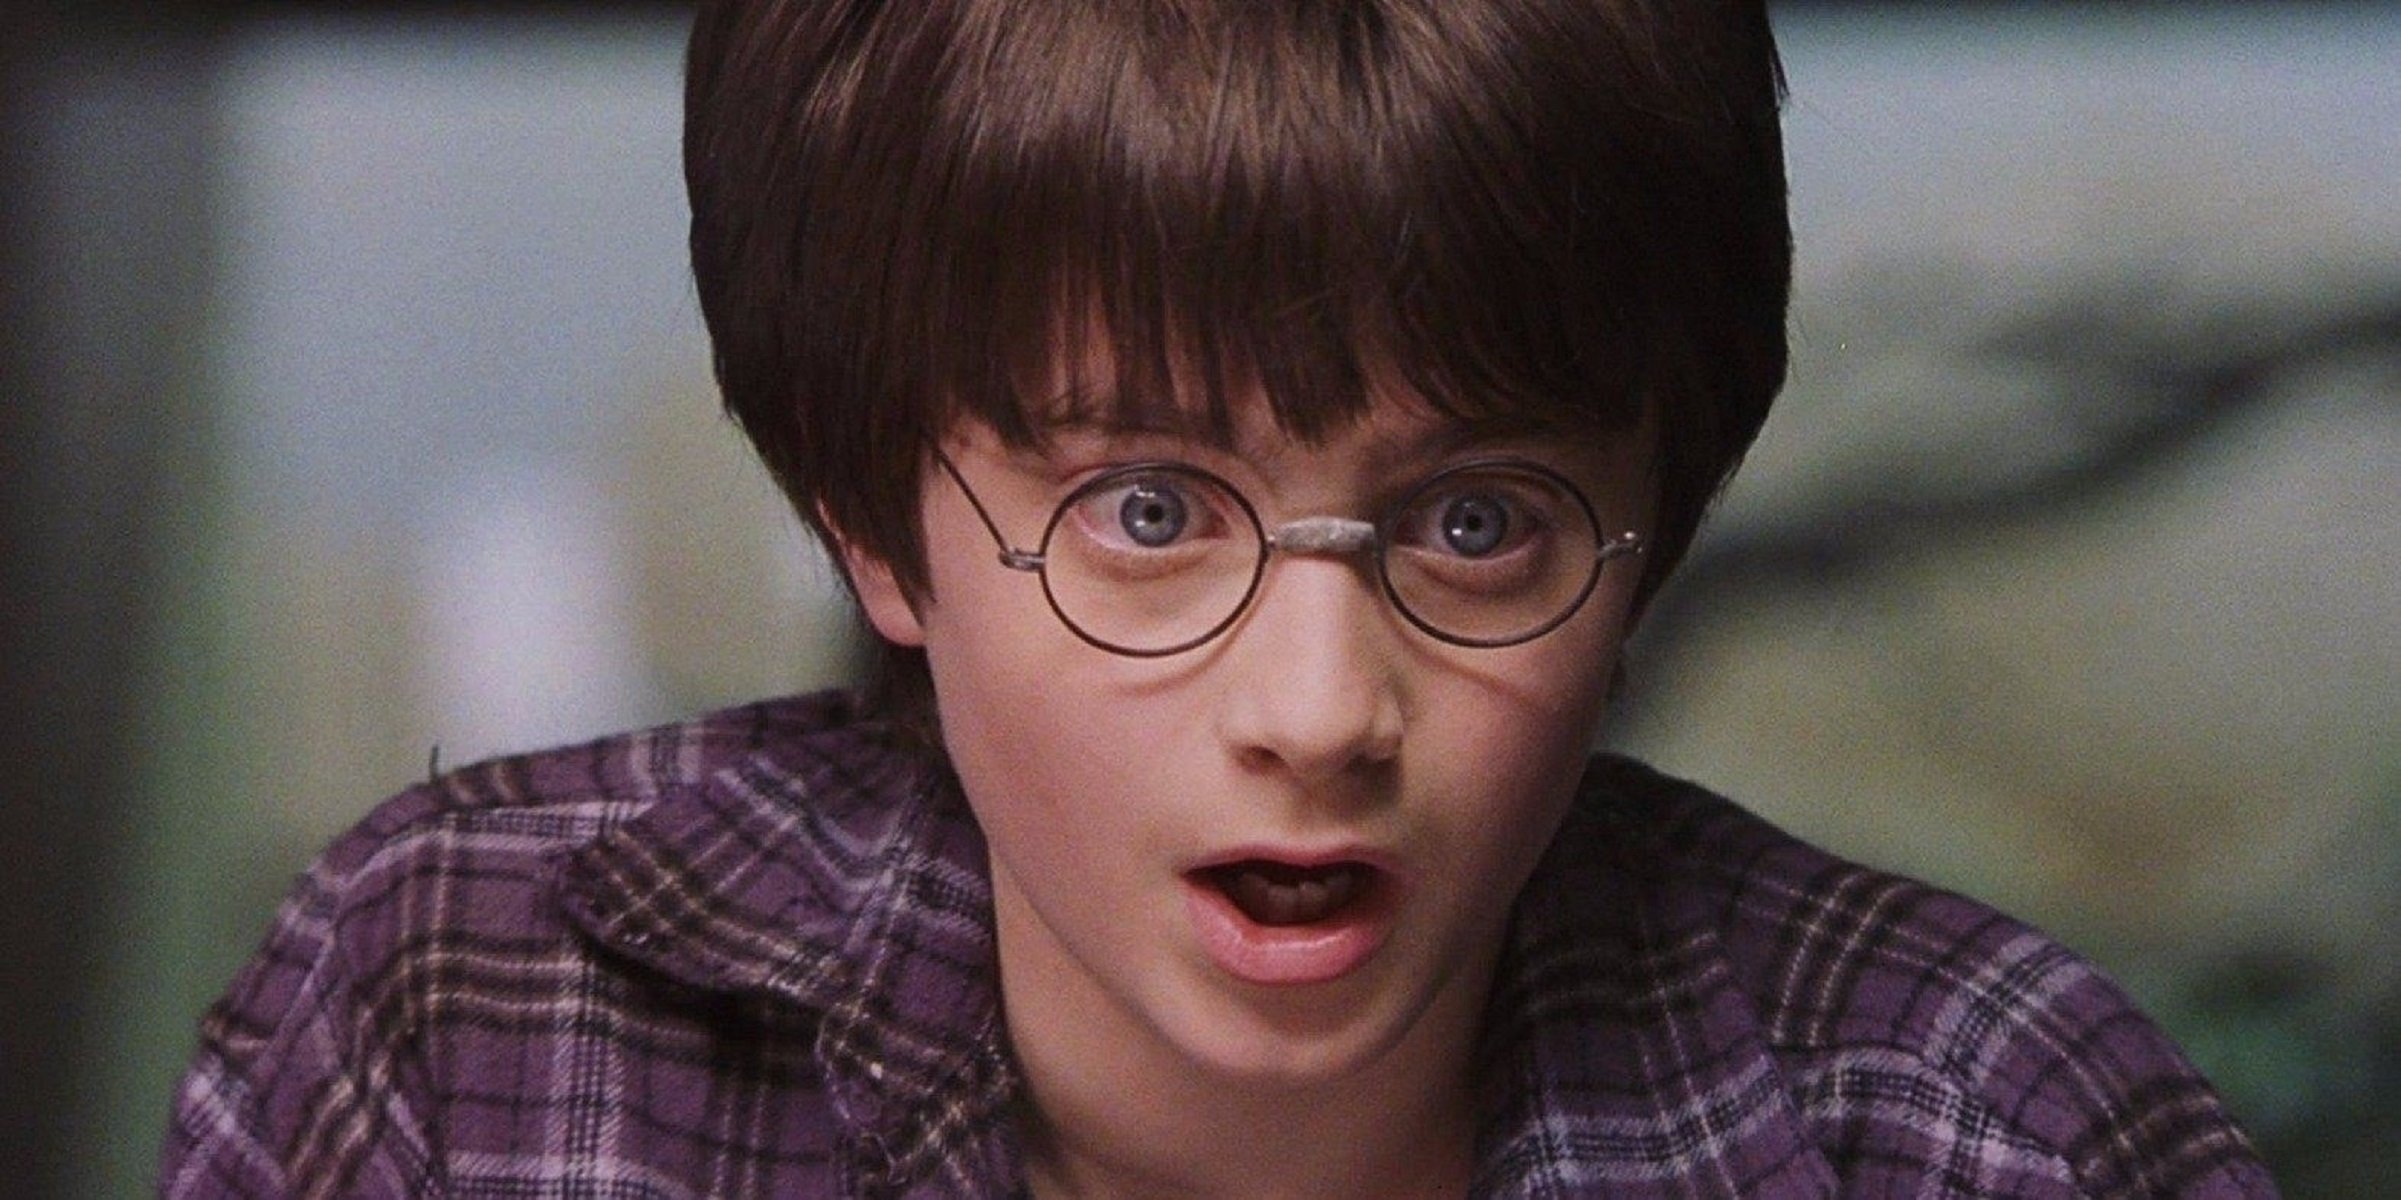 La escuela que prohíbe leer Harry Potter por sus hechizos "reales"